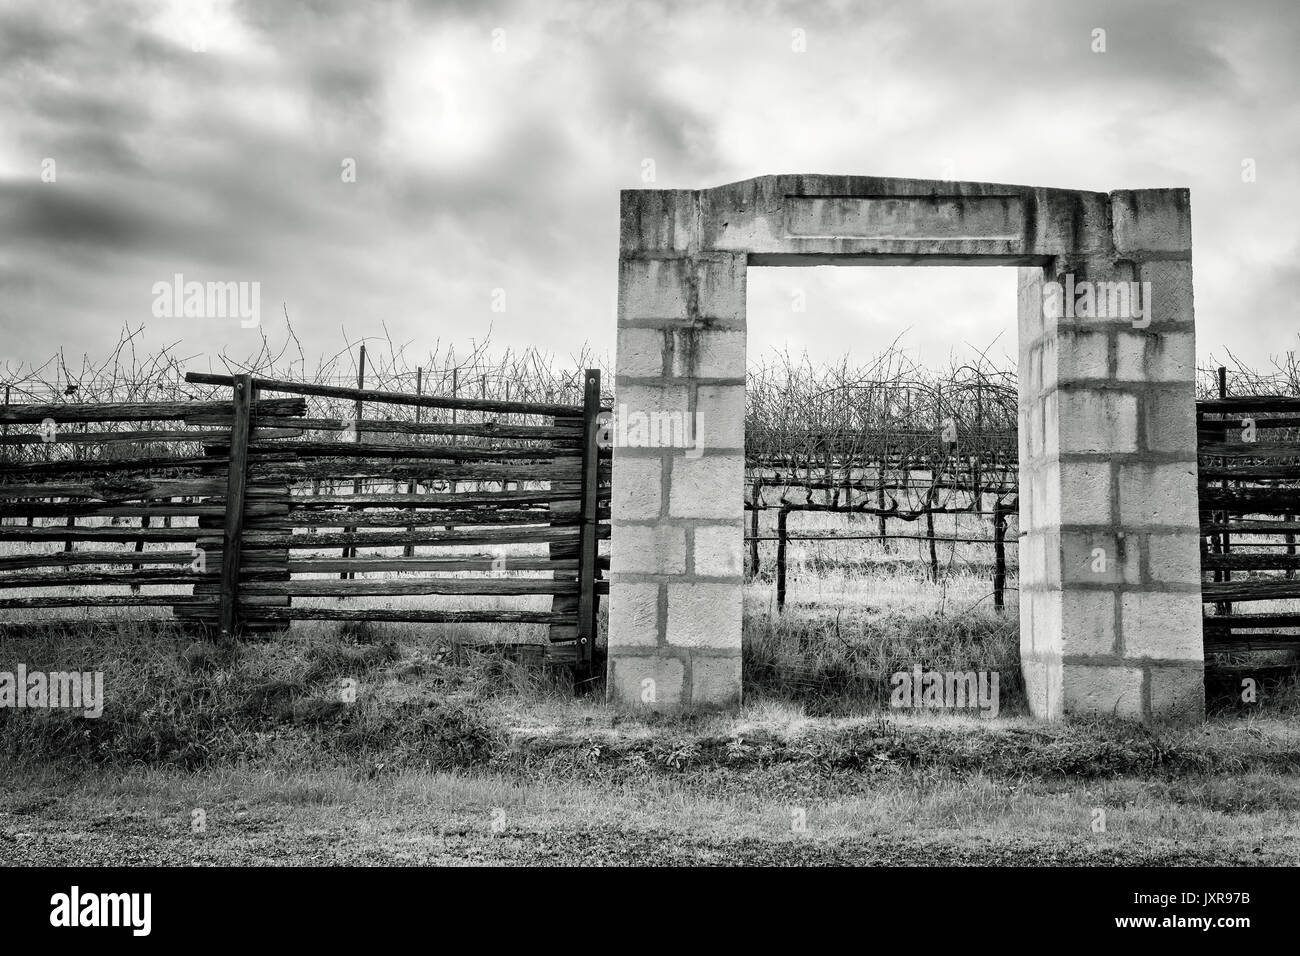 ANDERSON Valley, CA- Jan 2, 2017: California vigna e gate realizzata in blocchi di pietra segnata monumento Tree 1999, la data in cui le uve sono state piantate. Foto Stock